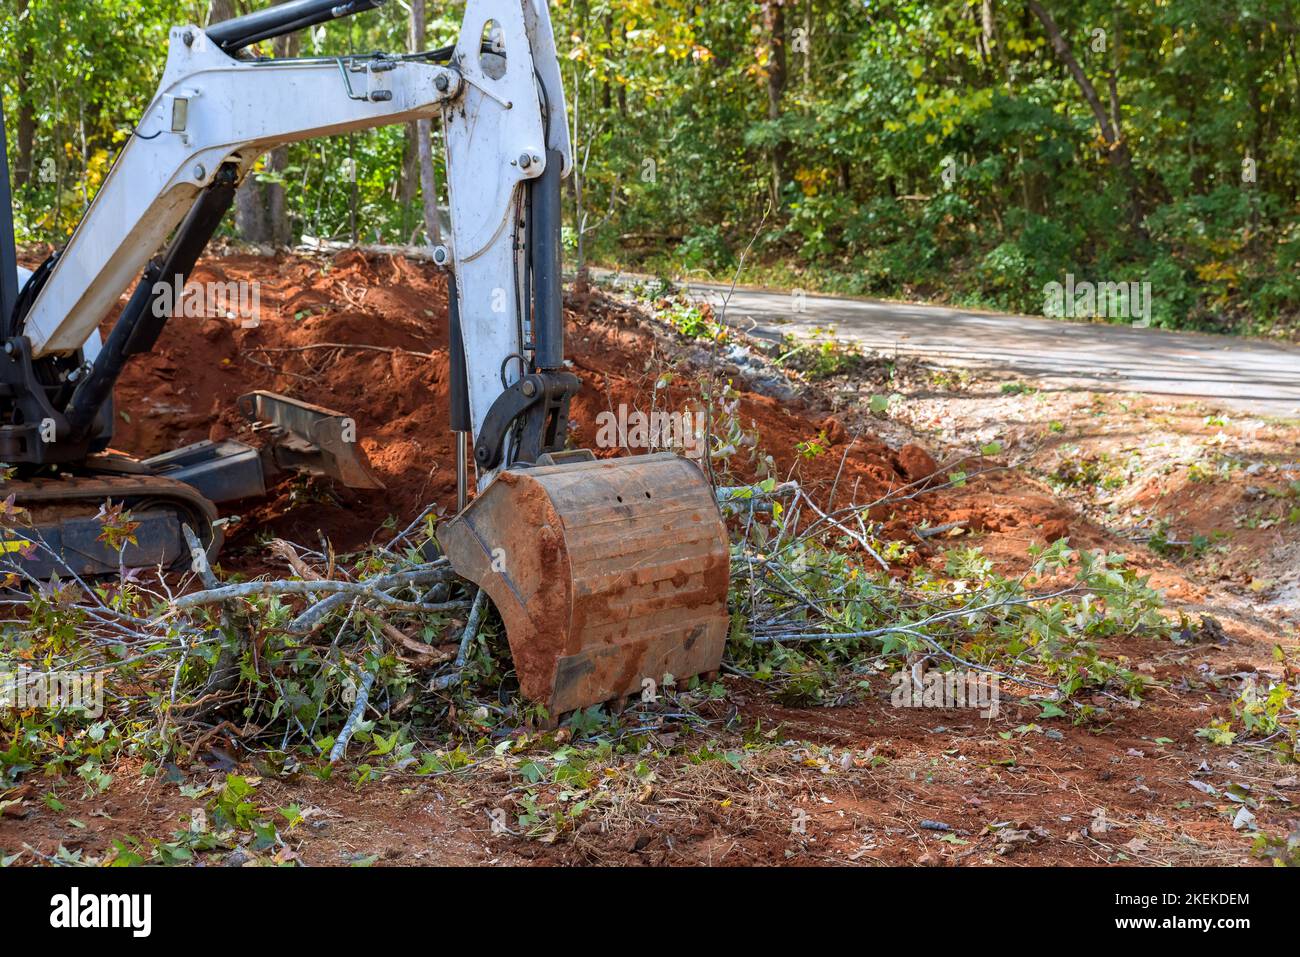 La mini-chargeuse de tracteur a été utilisée pour dégager les racines des arbres pour la construction de lotissements sur une parcelle de terrain déblayée pendant les travaux d'aménagement paysager. Banque D'Images